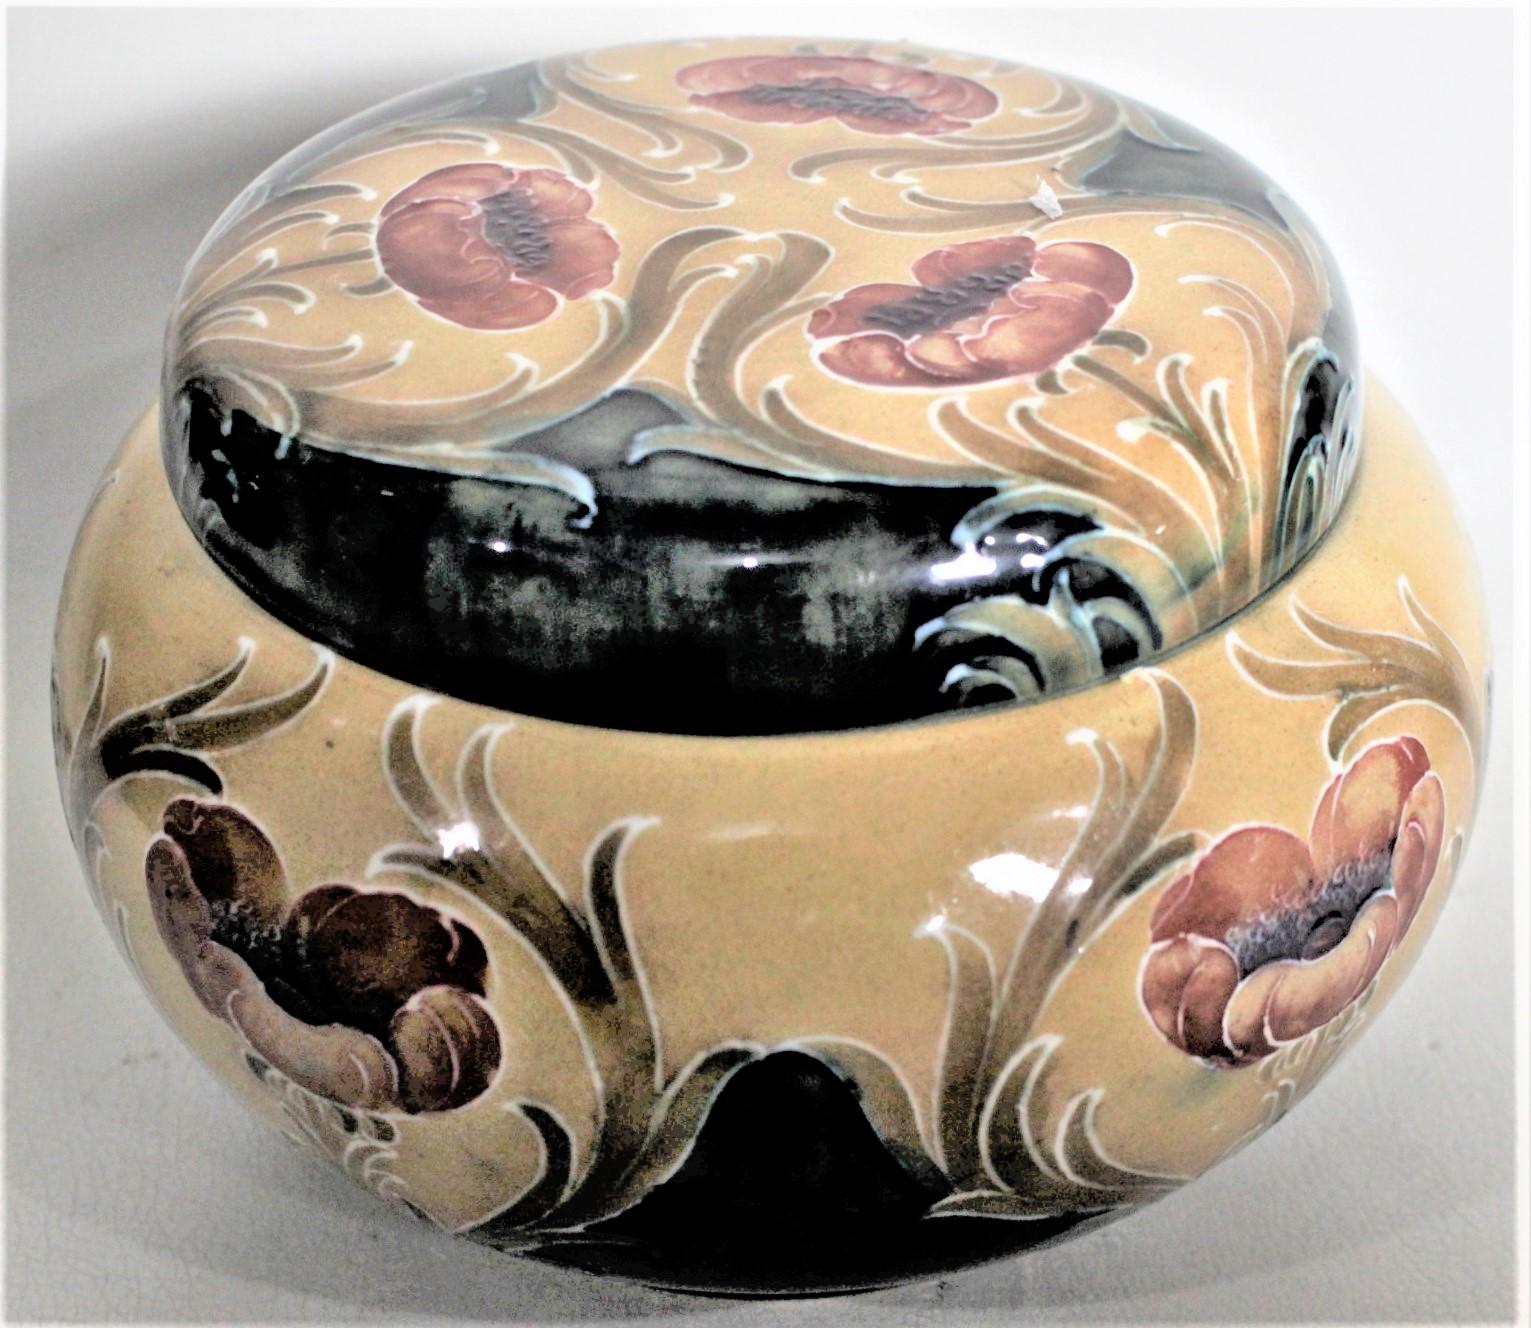 Cette ancienne poterie d'art a été fabriquée par la société James MacIntyre en Angleterre, sous la direction de William Moorcroft, vers 1890, dans le style victorien. Le pot est réalisé dans un fond moutarde profond avec des coquelicots rouge